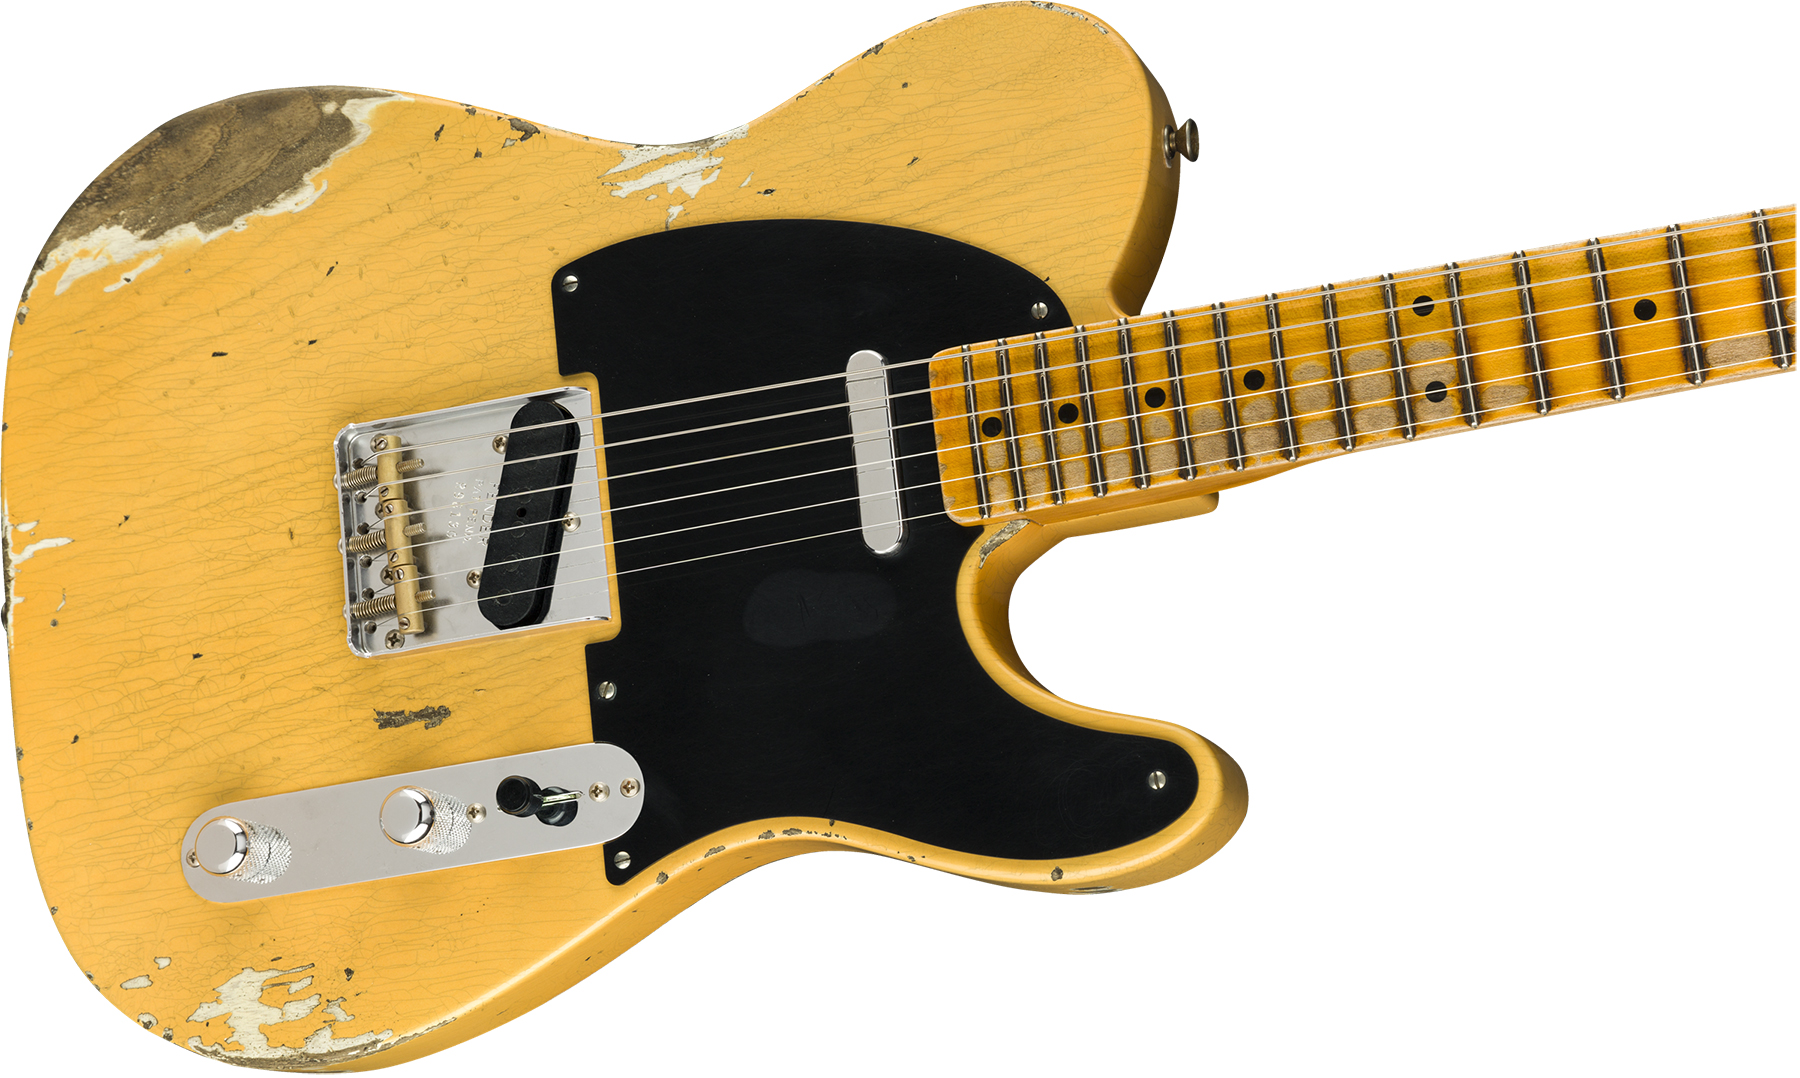 Fender Custom Shop Tele 1952 2019 Mn - Heavy Relic Aged Nocaster Blonde - Guitarra eléctrica con forma de tel - Variation 2